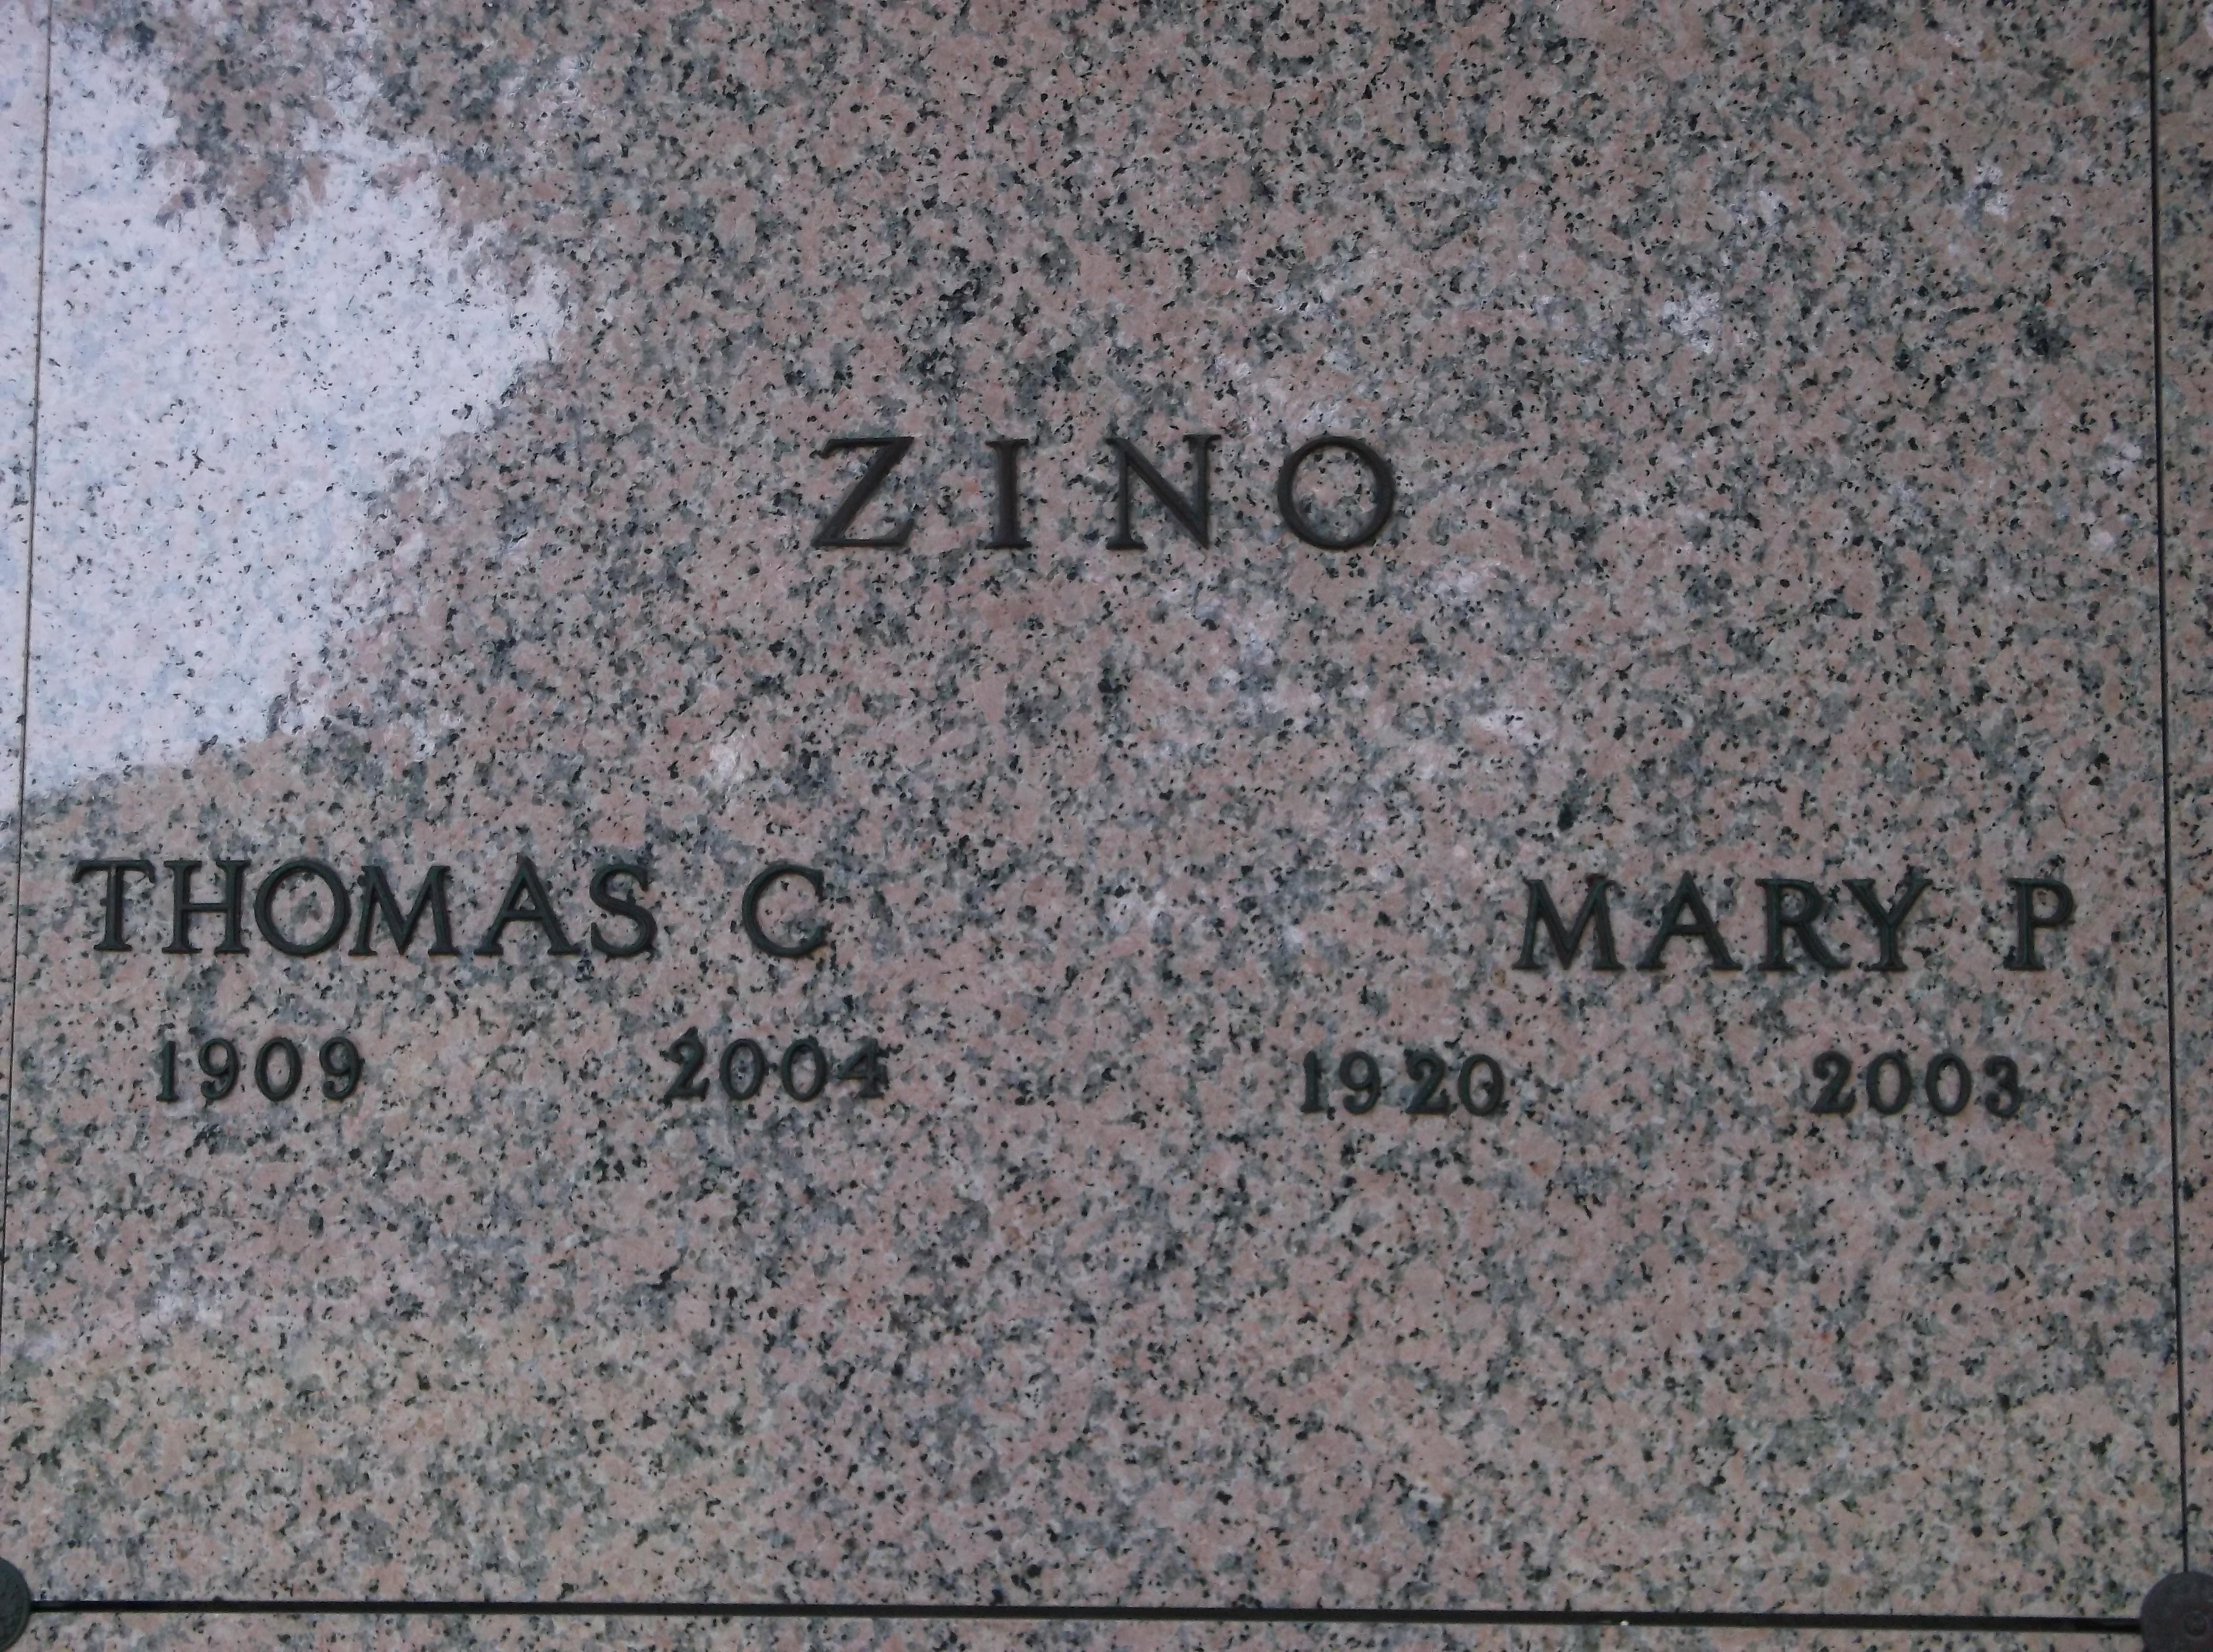 Mary P Zino